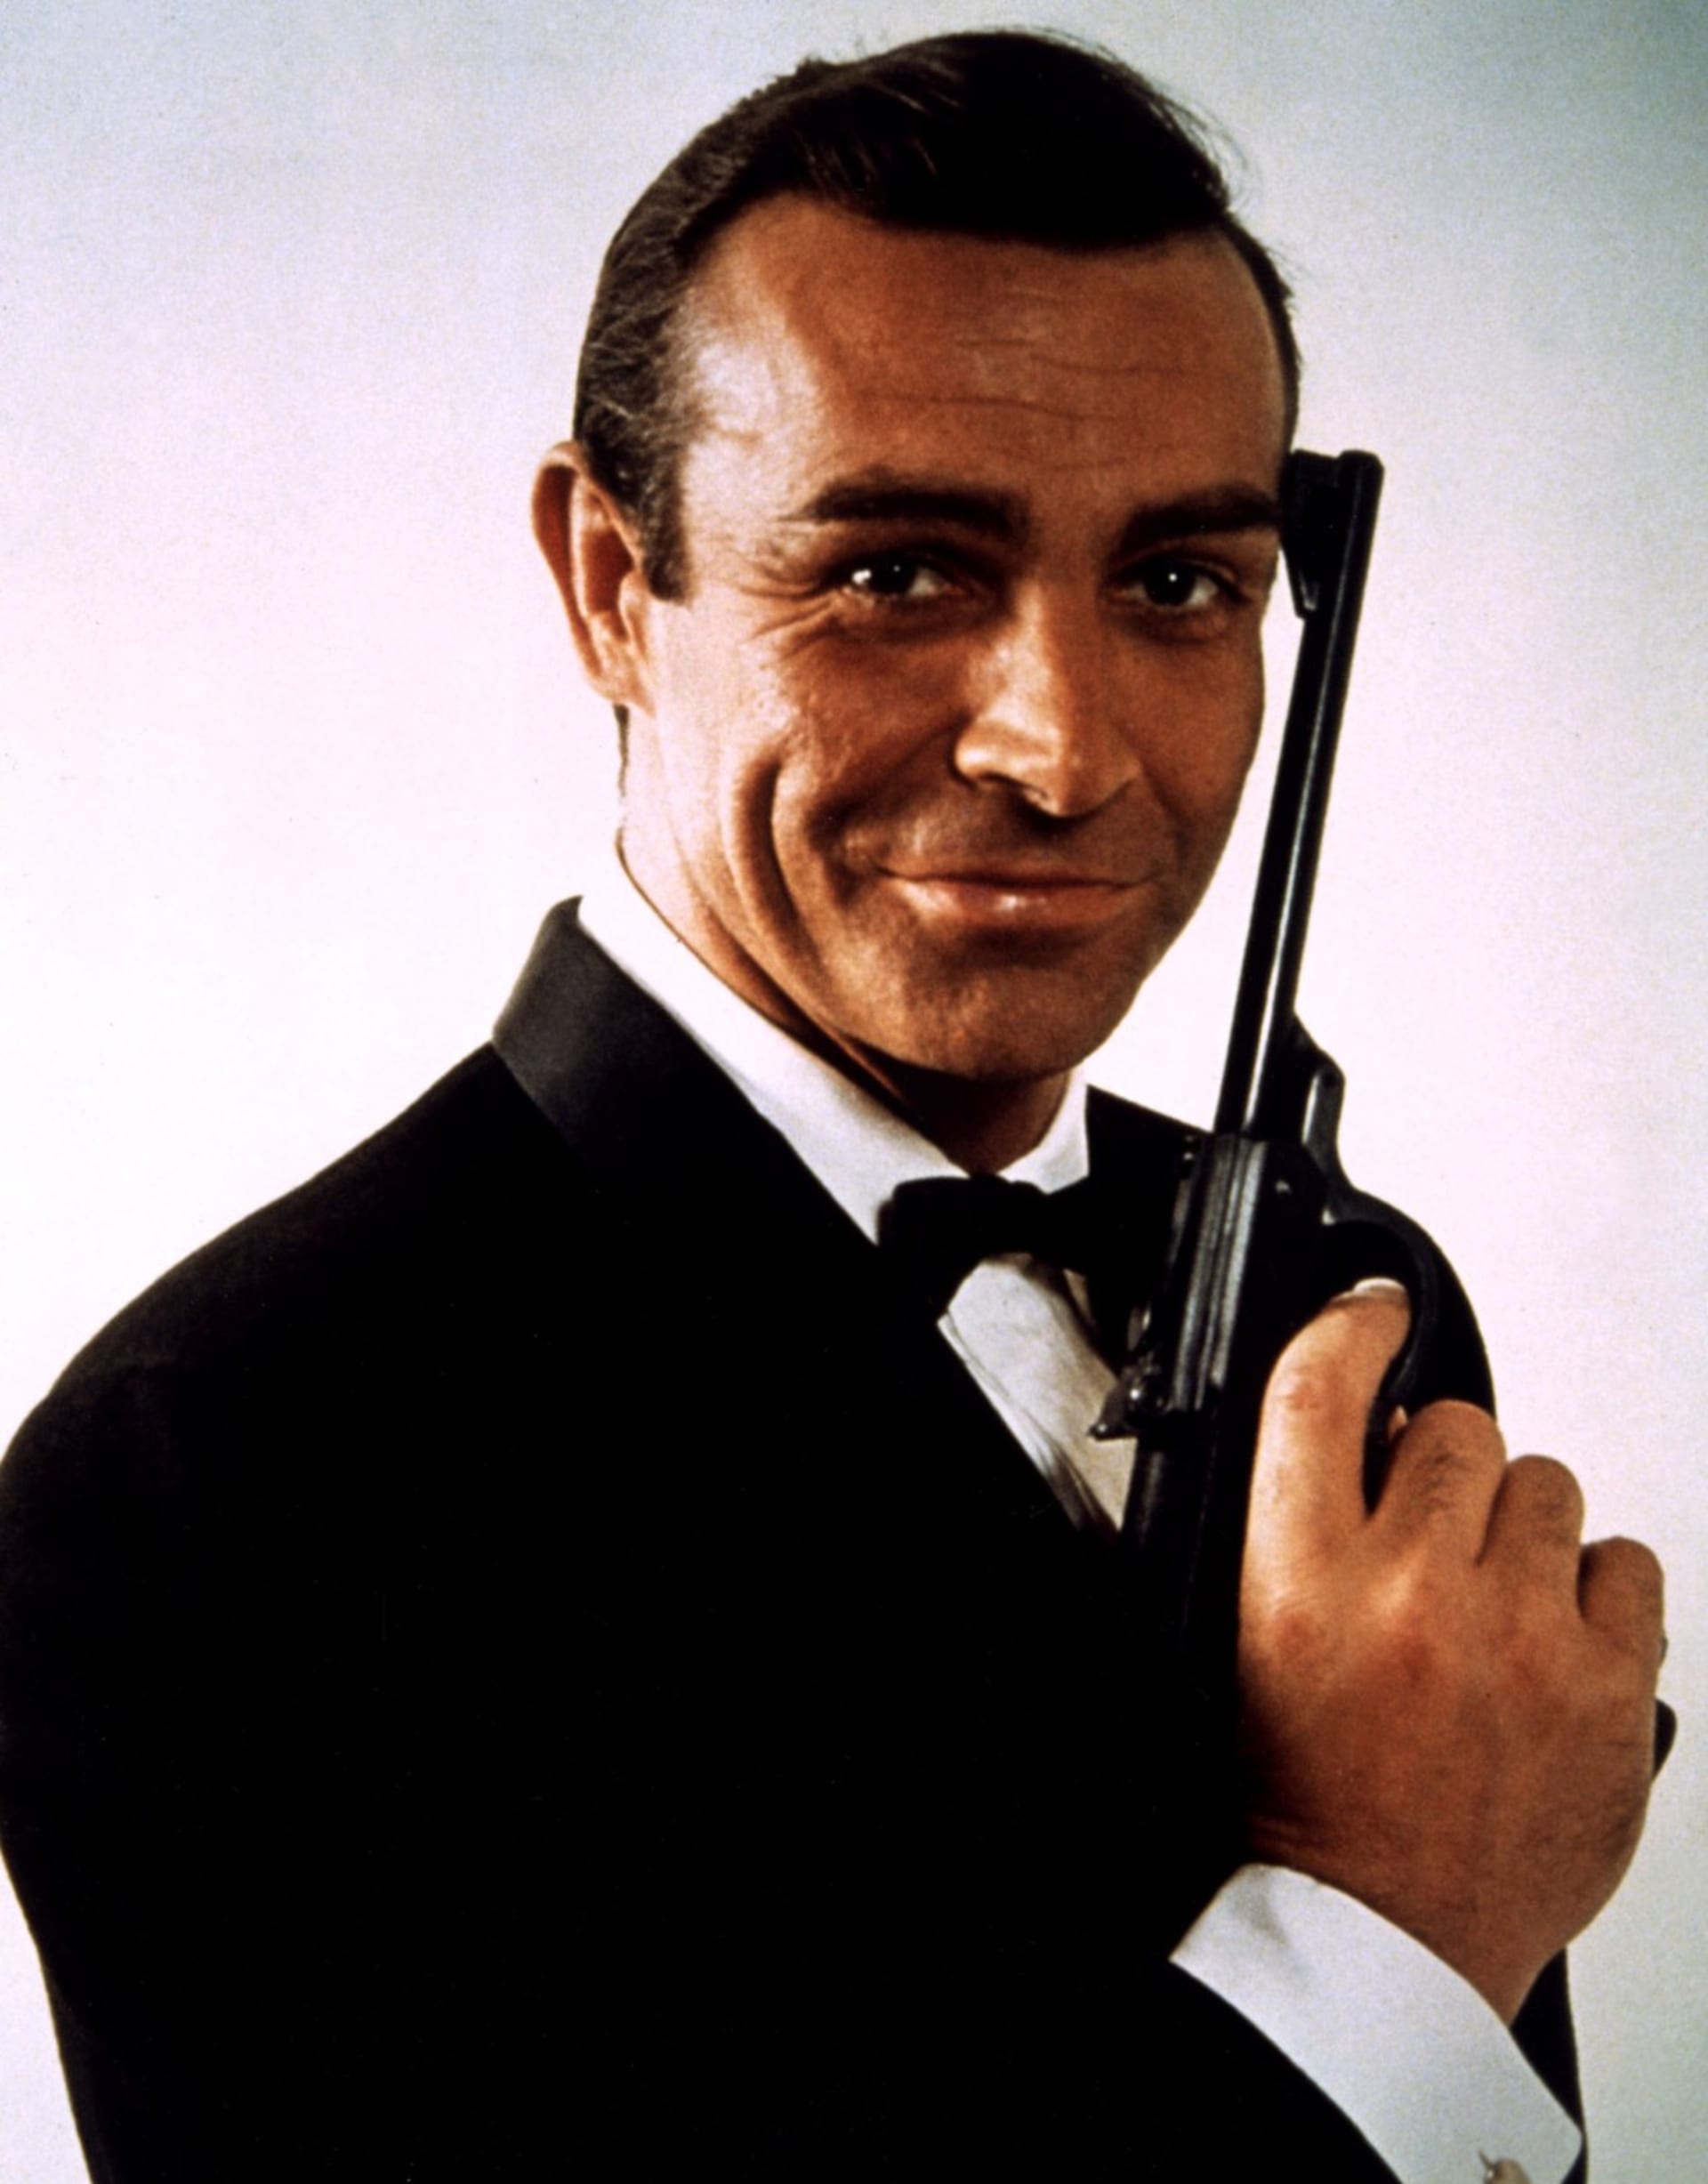 Stalo se už jakousi tradicí, že roli Jamese Bonda dostávají výhradně britští herci.